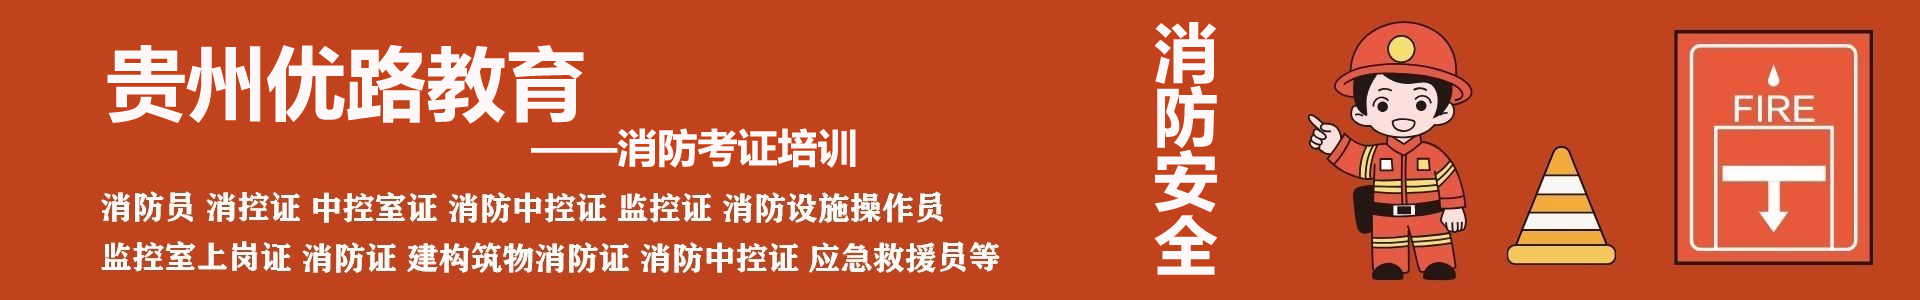 贵州优路消防设施操作员培训机构首页